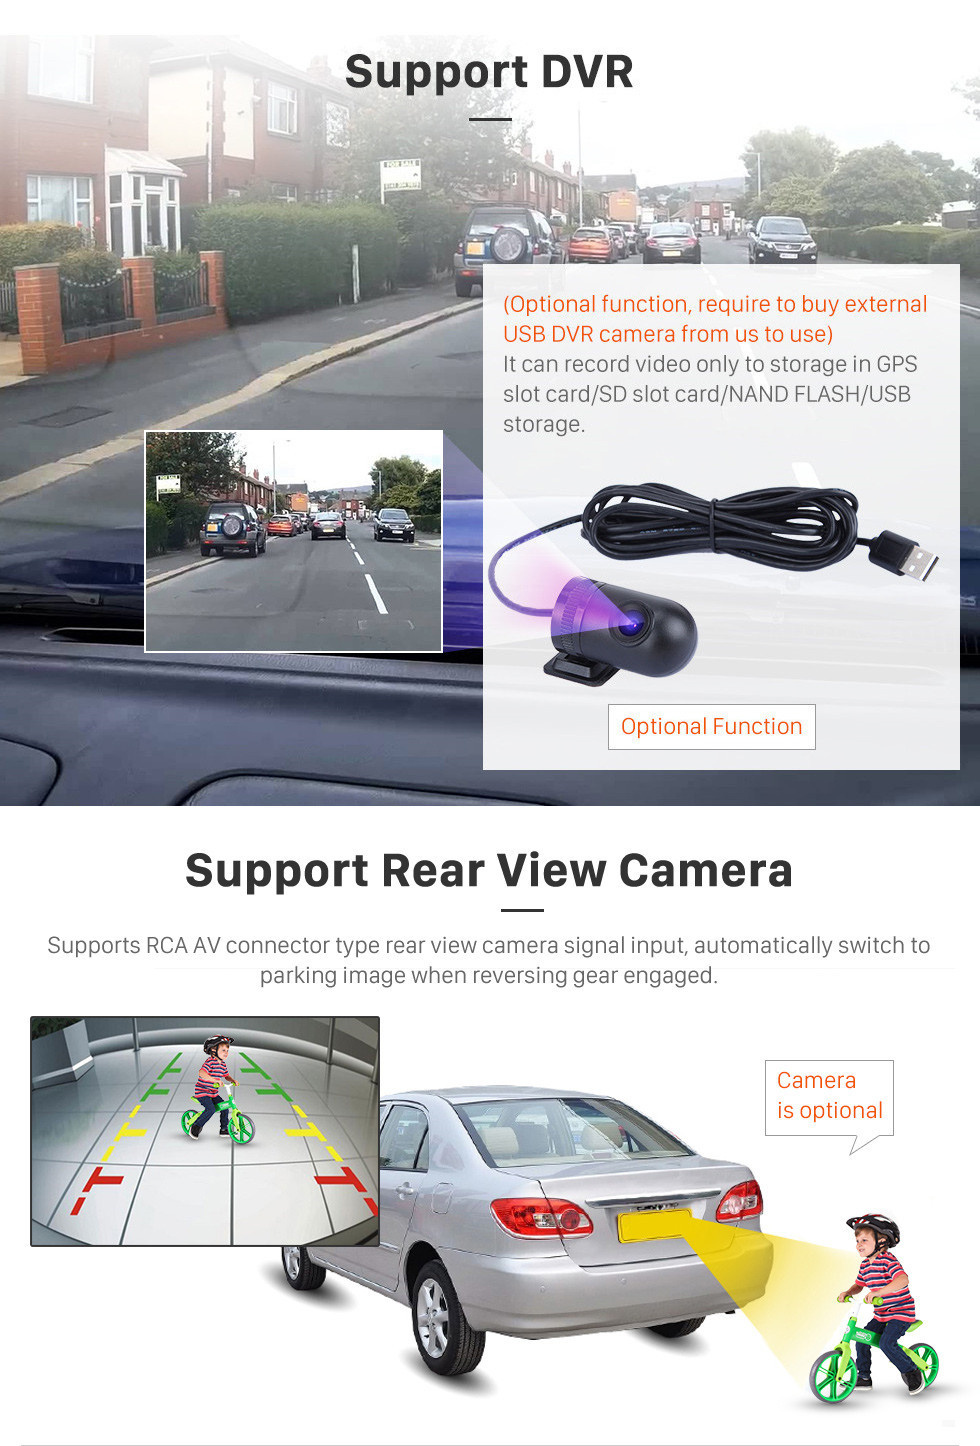 Seicane Radio Android 12.0 de 10.1 pulgadas para 2013-2016 Toyota RAV4 LHD con navegación GPS HD Pantalla táctil Bluetooth Carplay compatible con cámara retrovisora DAB +